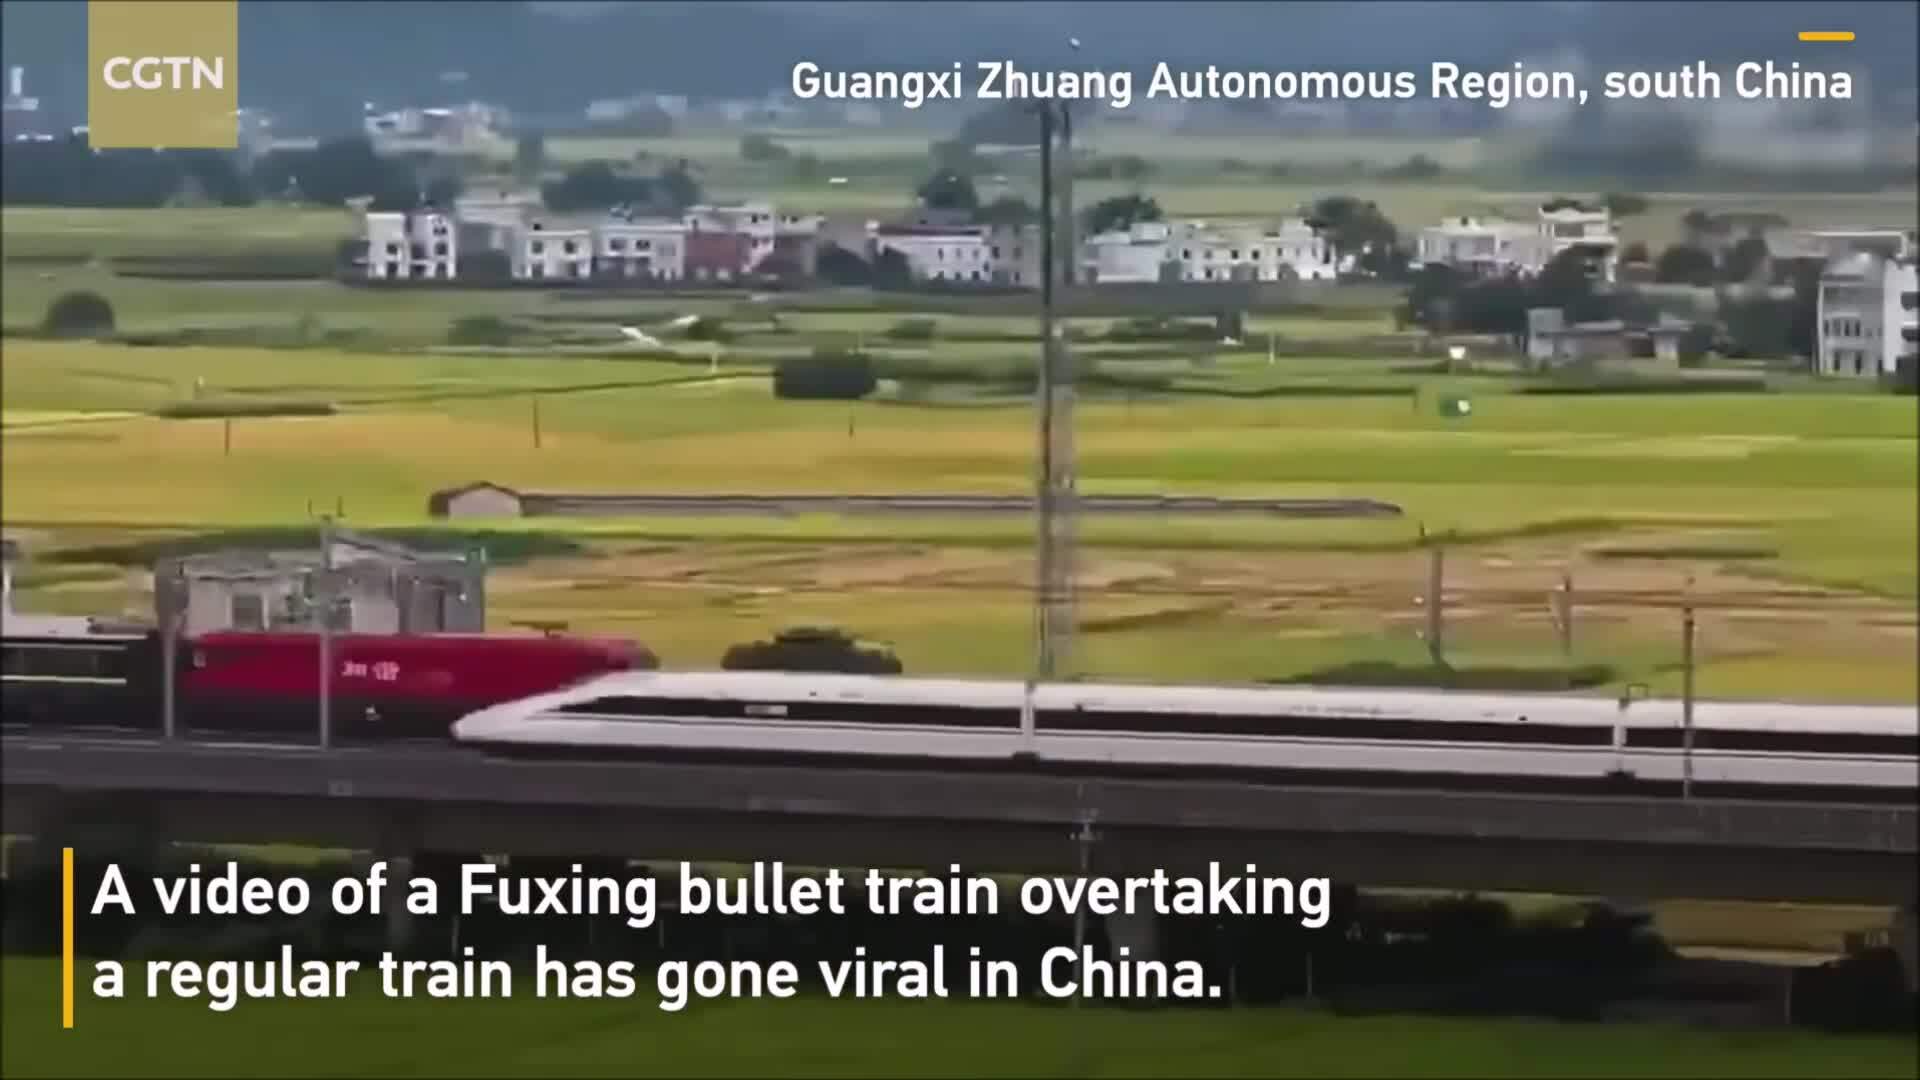 Trung Quốc và mạng lưới đường sắt cao tốc lớn nhất thế giới